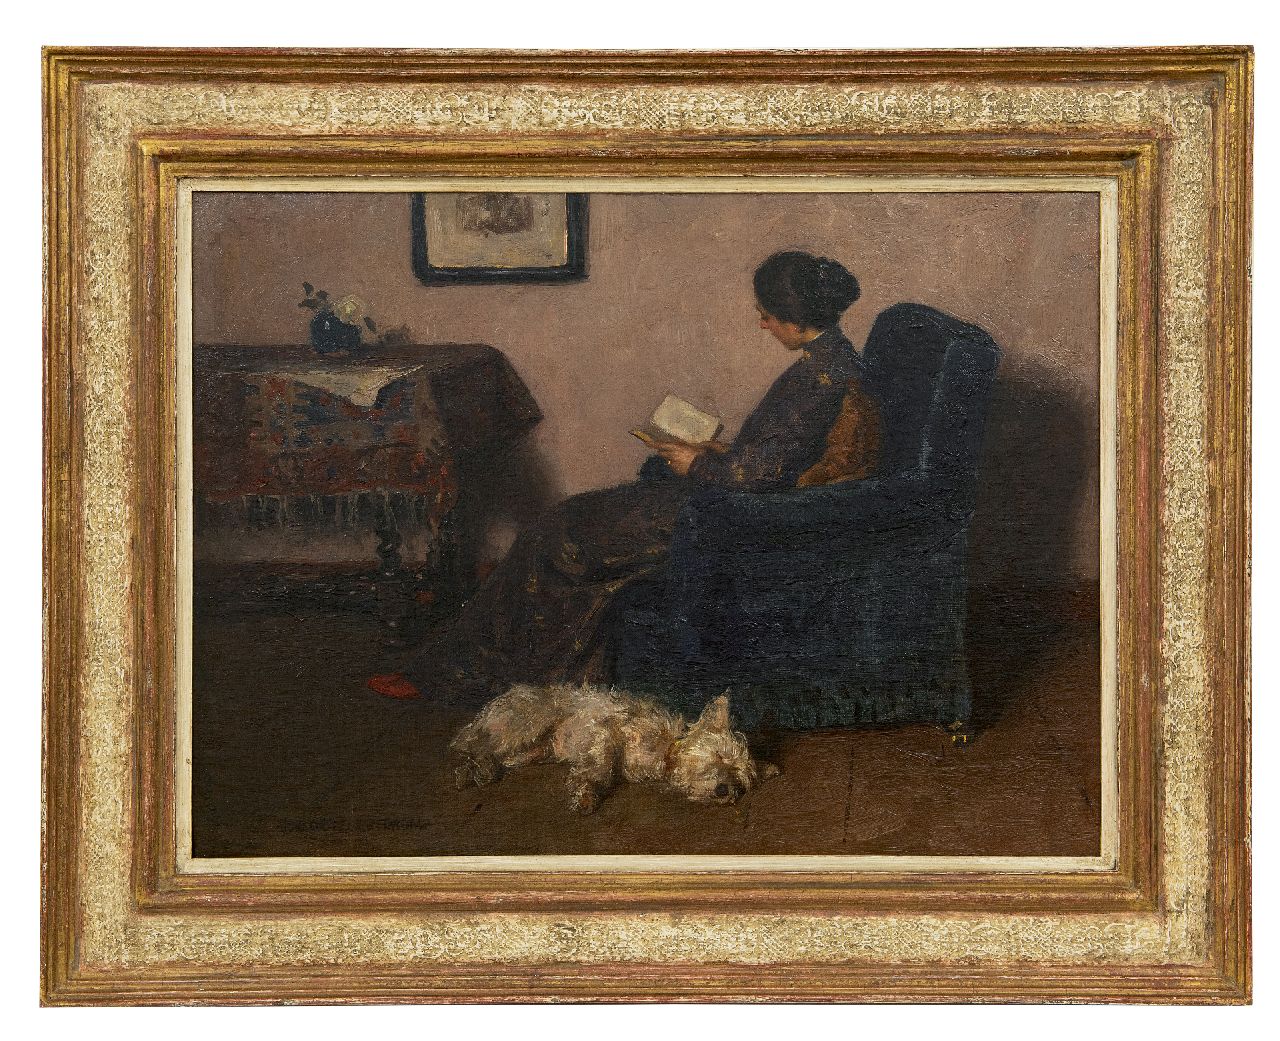 Zoetelief Tromp J.  | Johannes 'Jan' Zoetelief Tromp, De vrouw van de schilder, lezend, met hun hond Billie, olieverf op doek 41,5 x 55,5 cm, gesigneerd linksonder